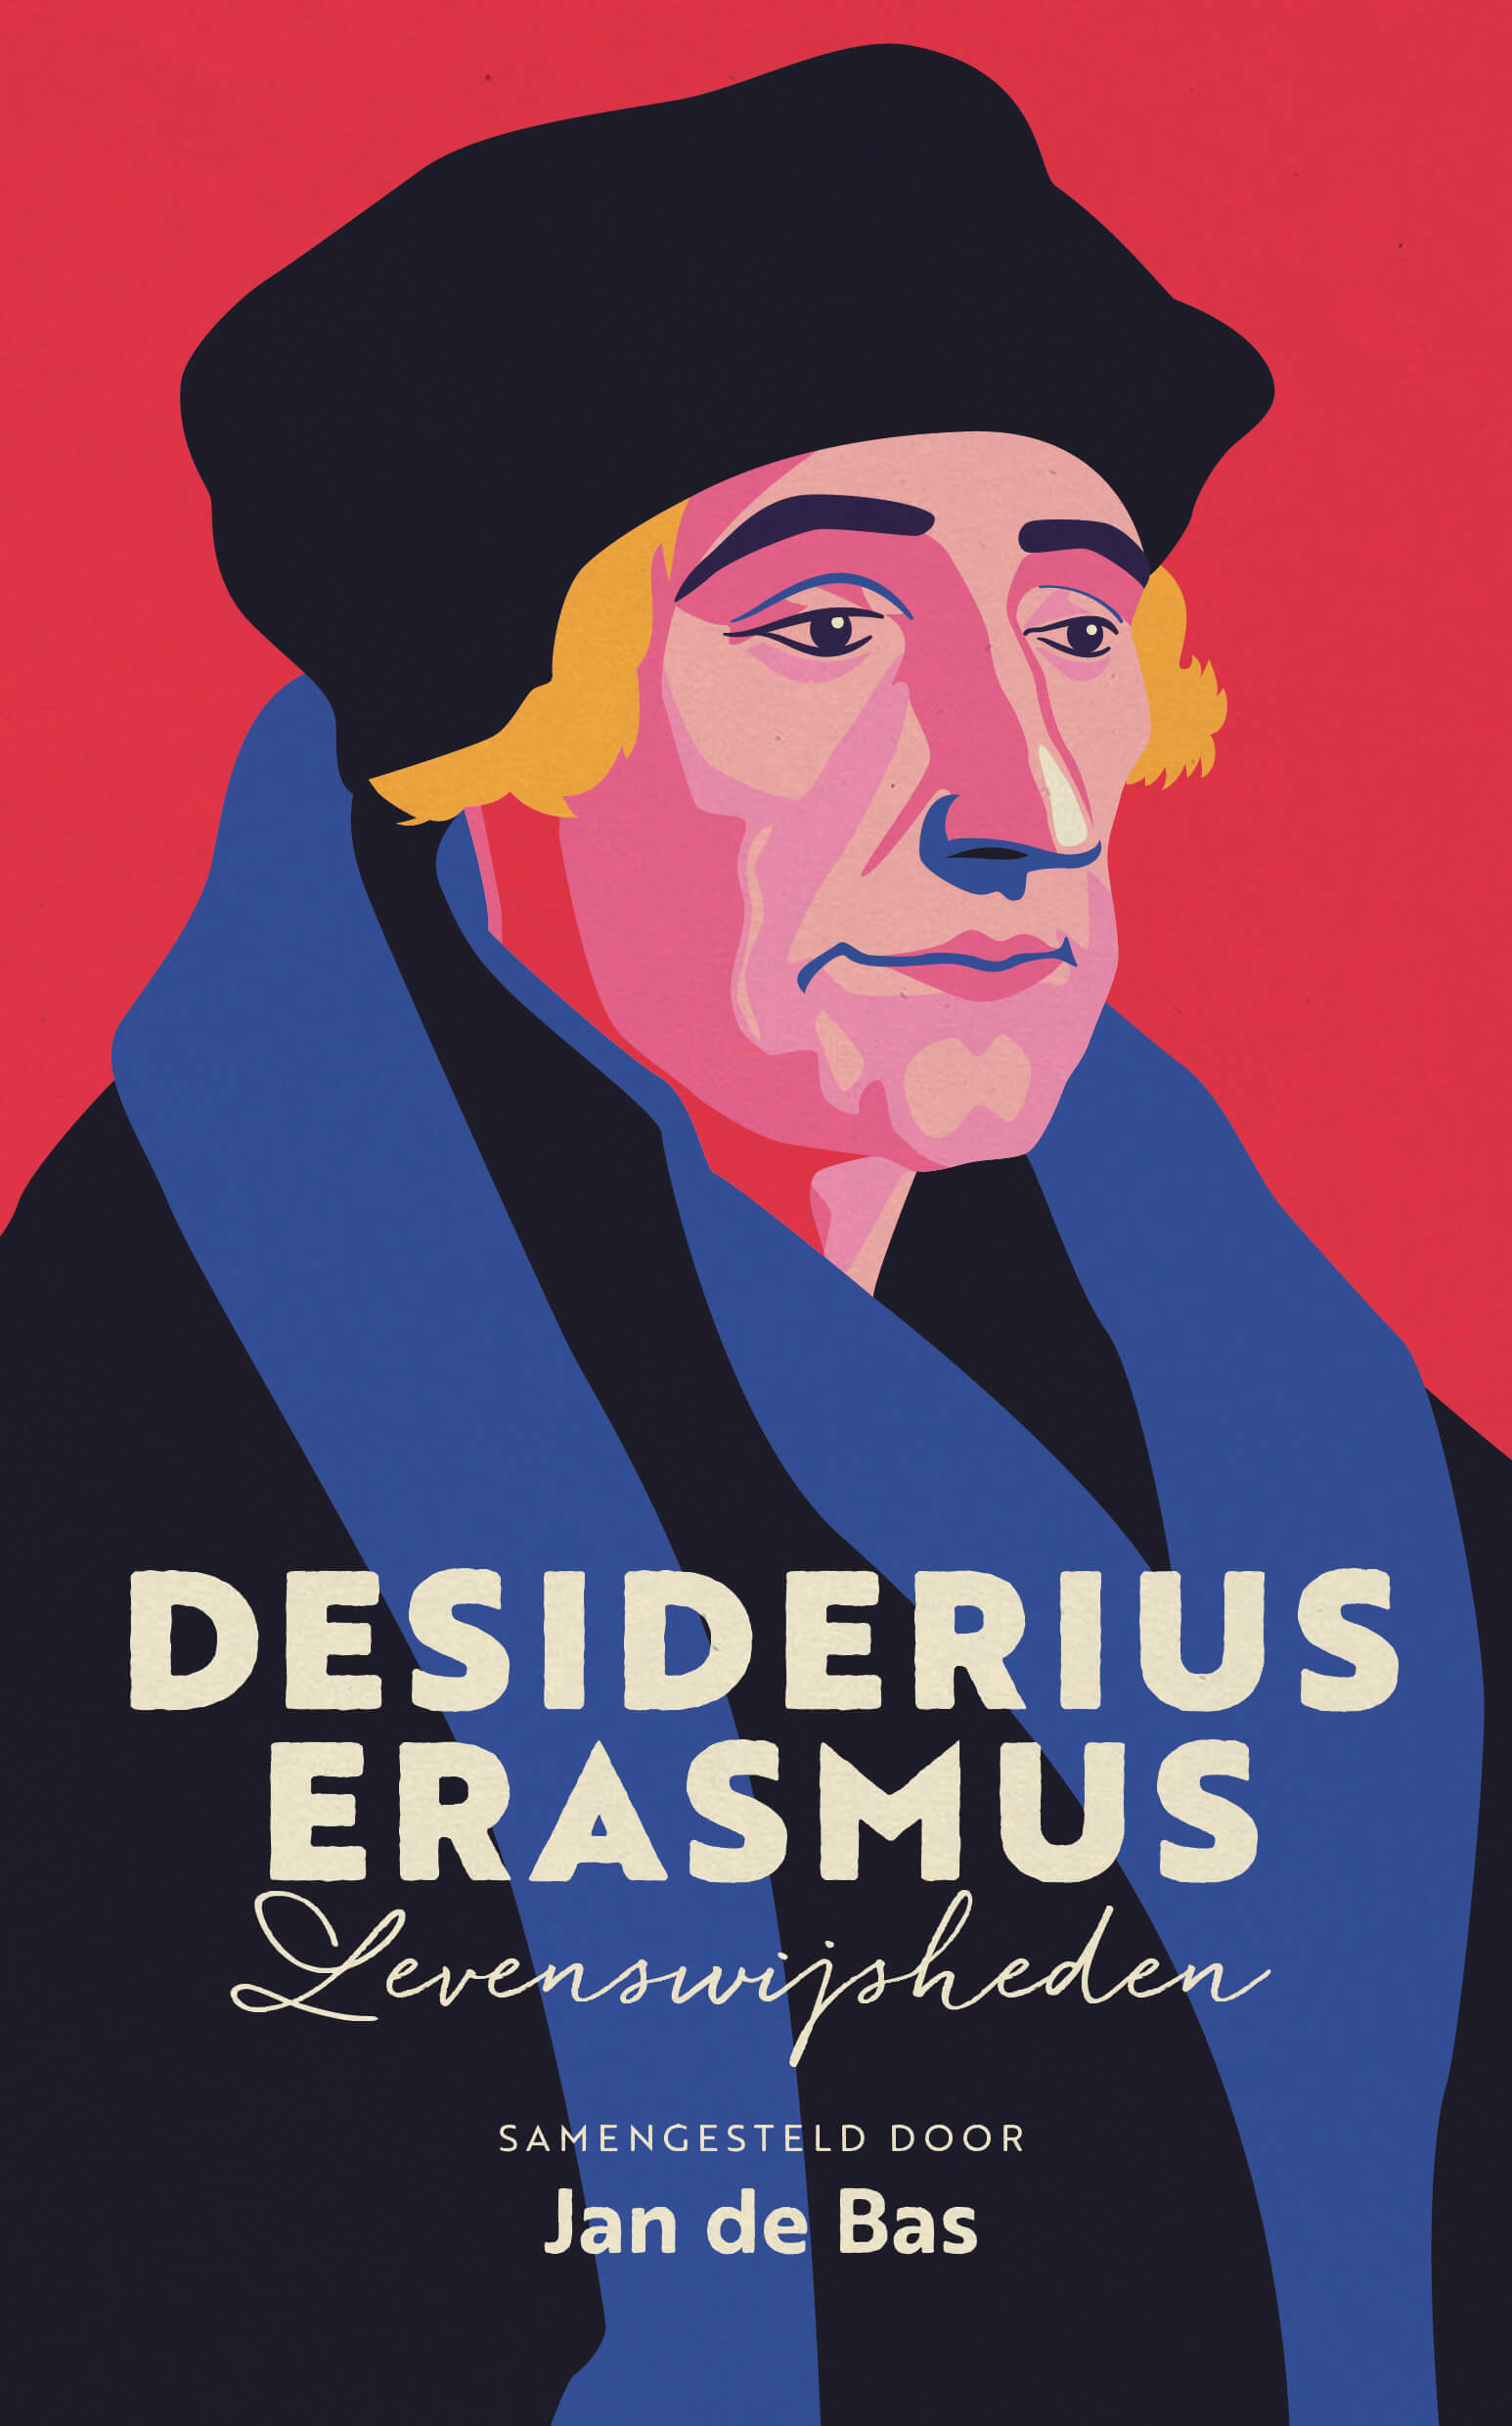 Desiderius Erasmus Jan de Bas Rotterdam